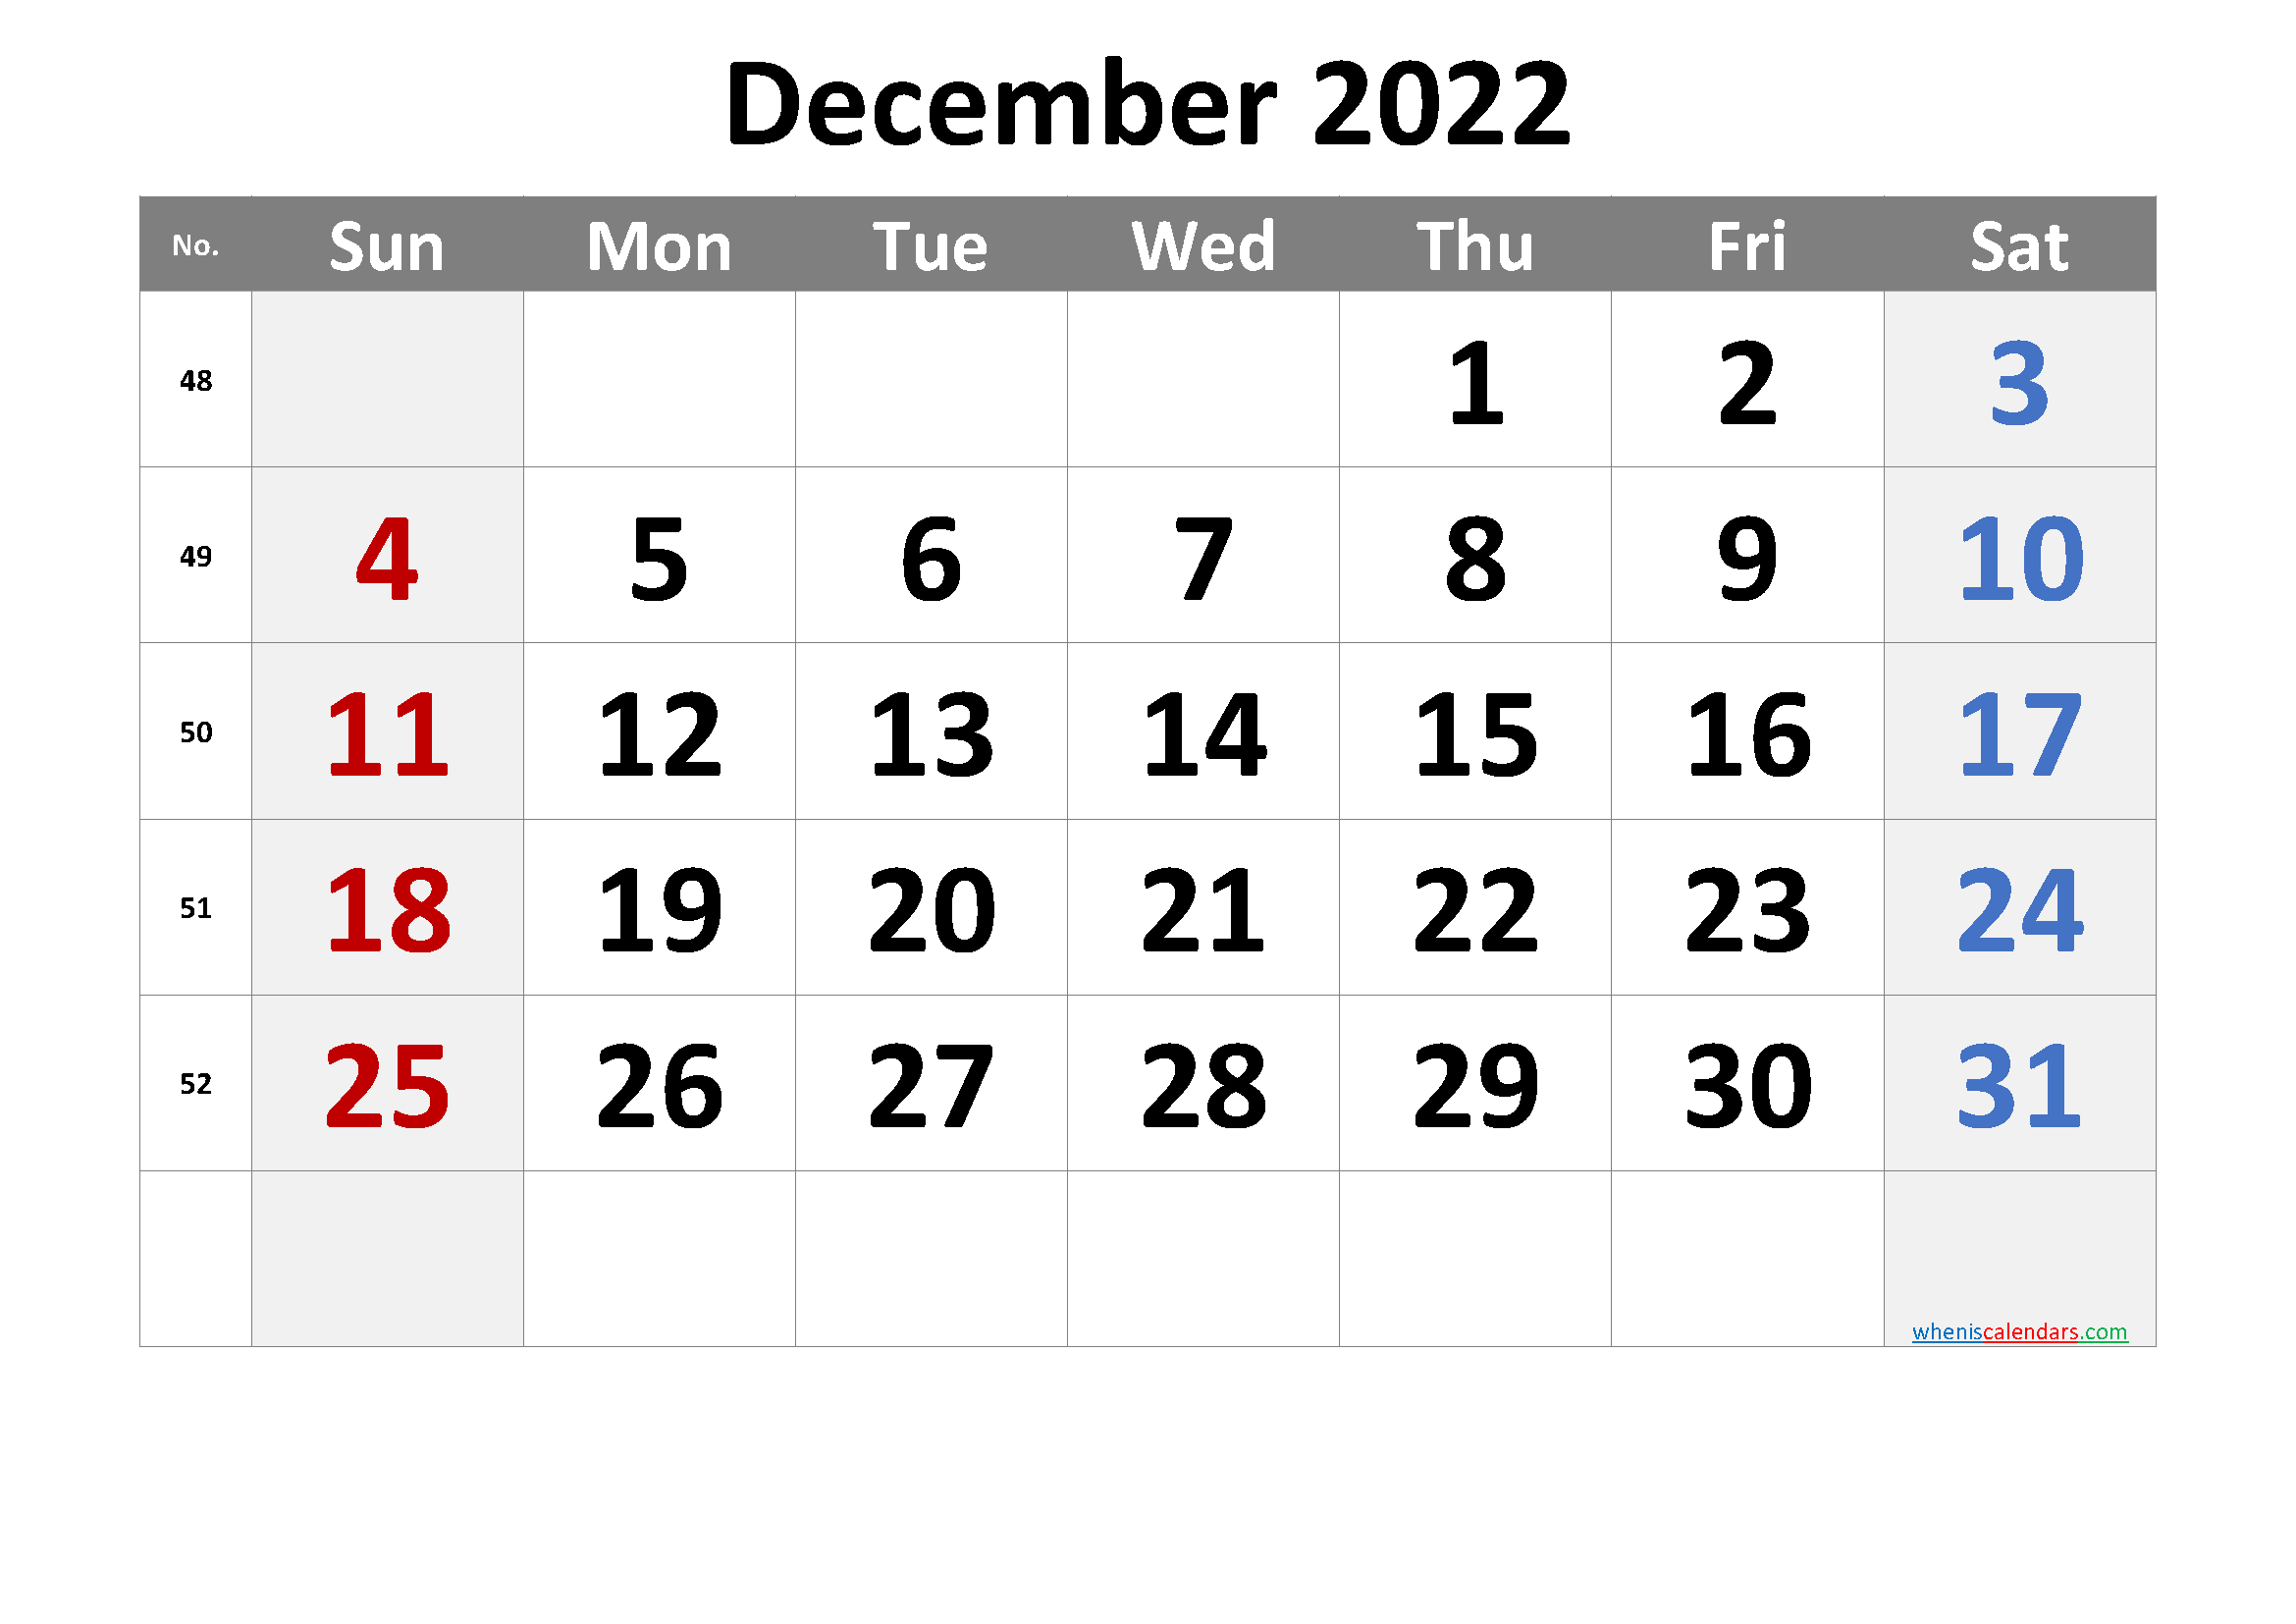 December 2022 Printable Calendar with Week Numbers